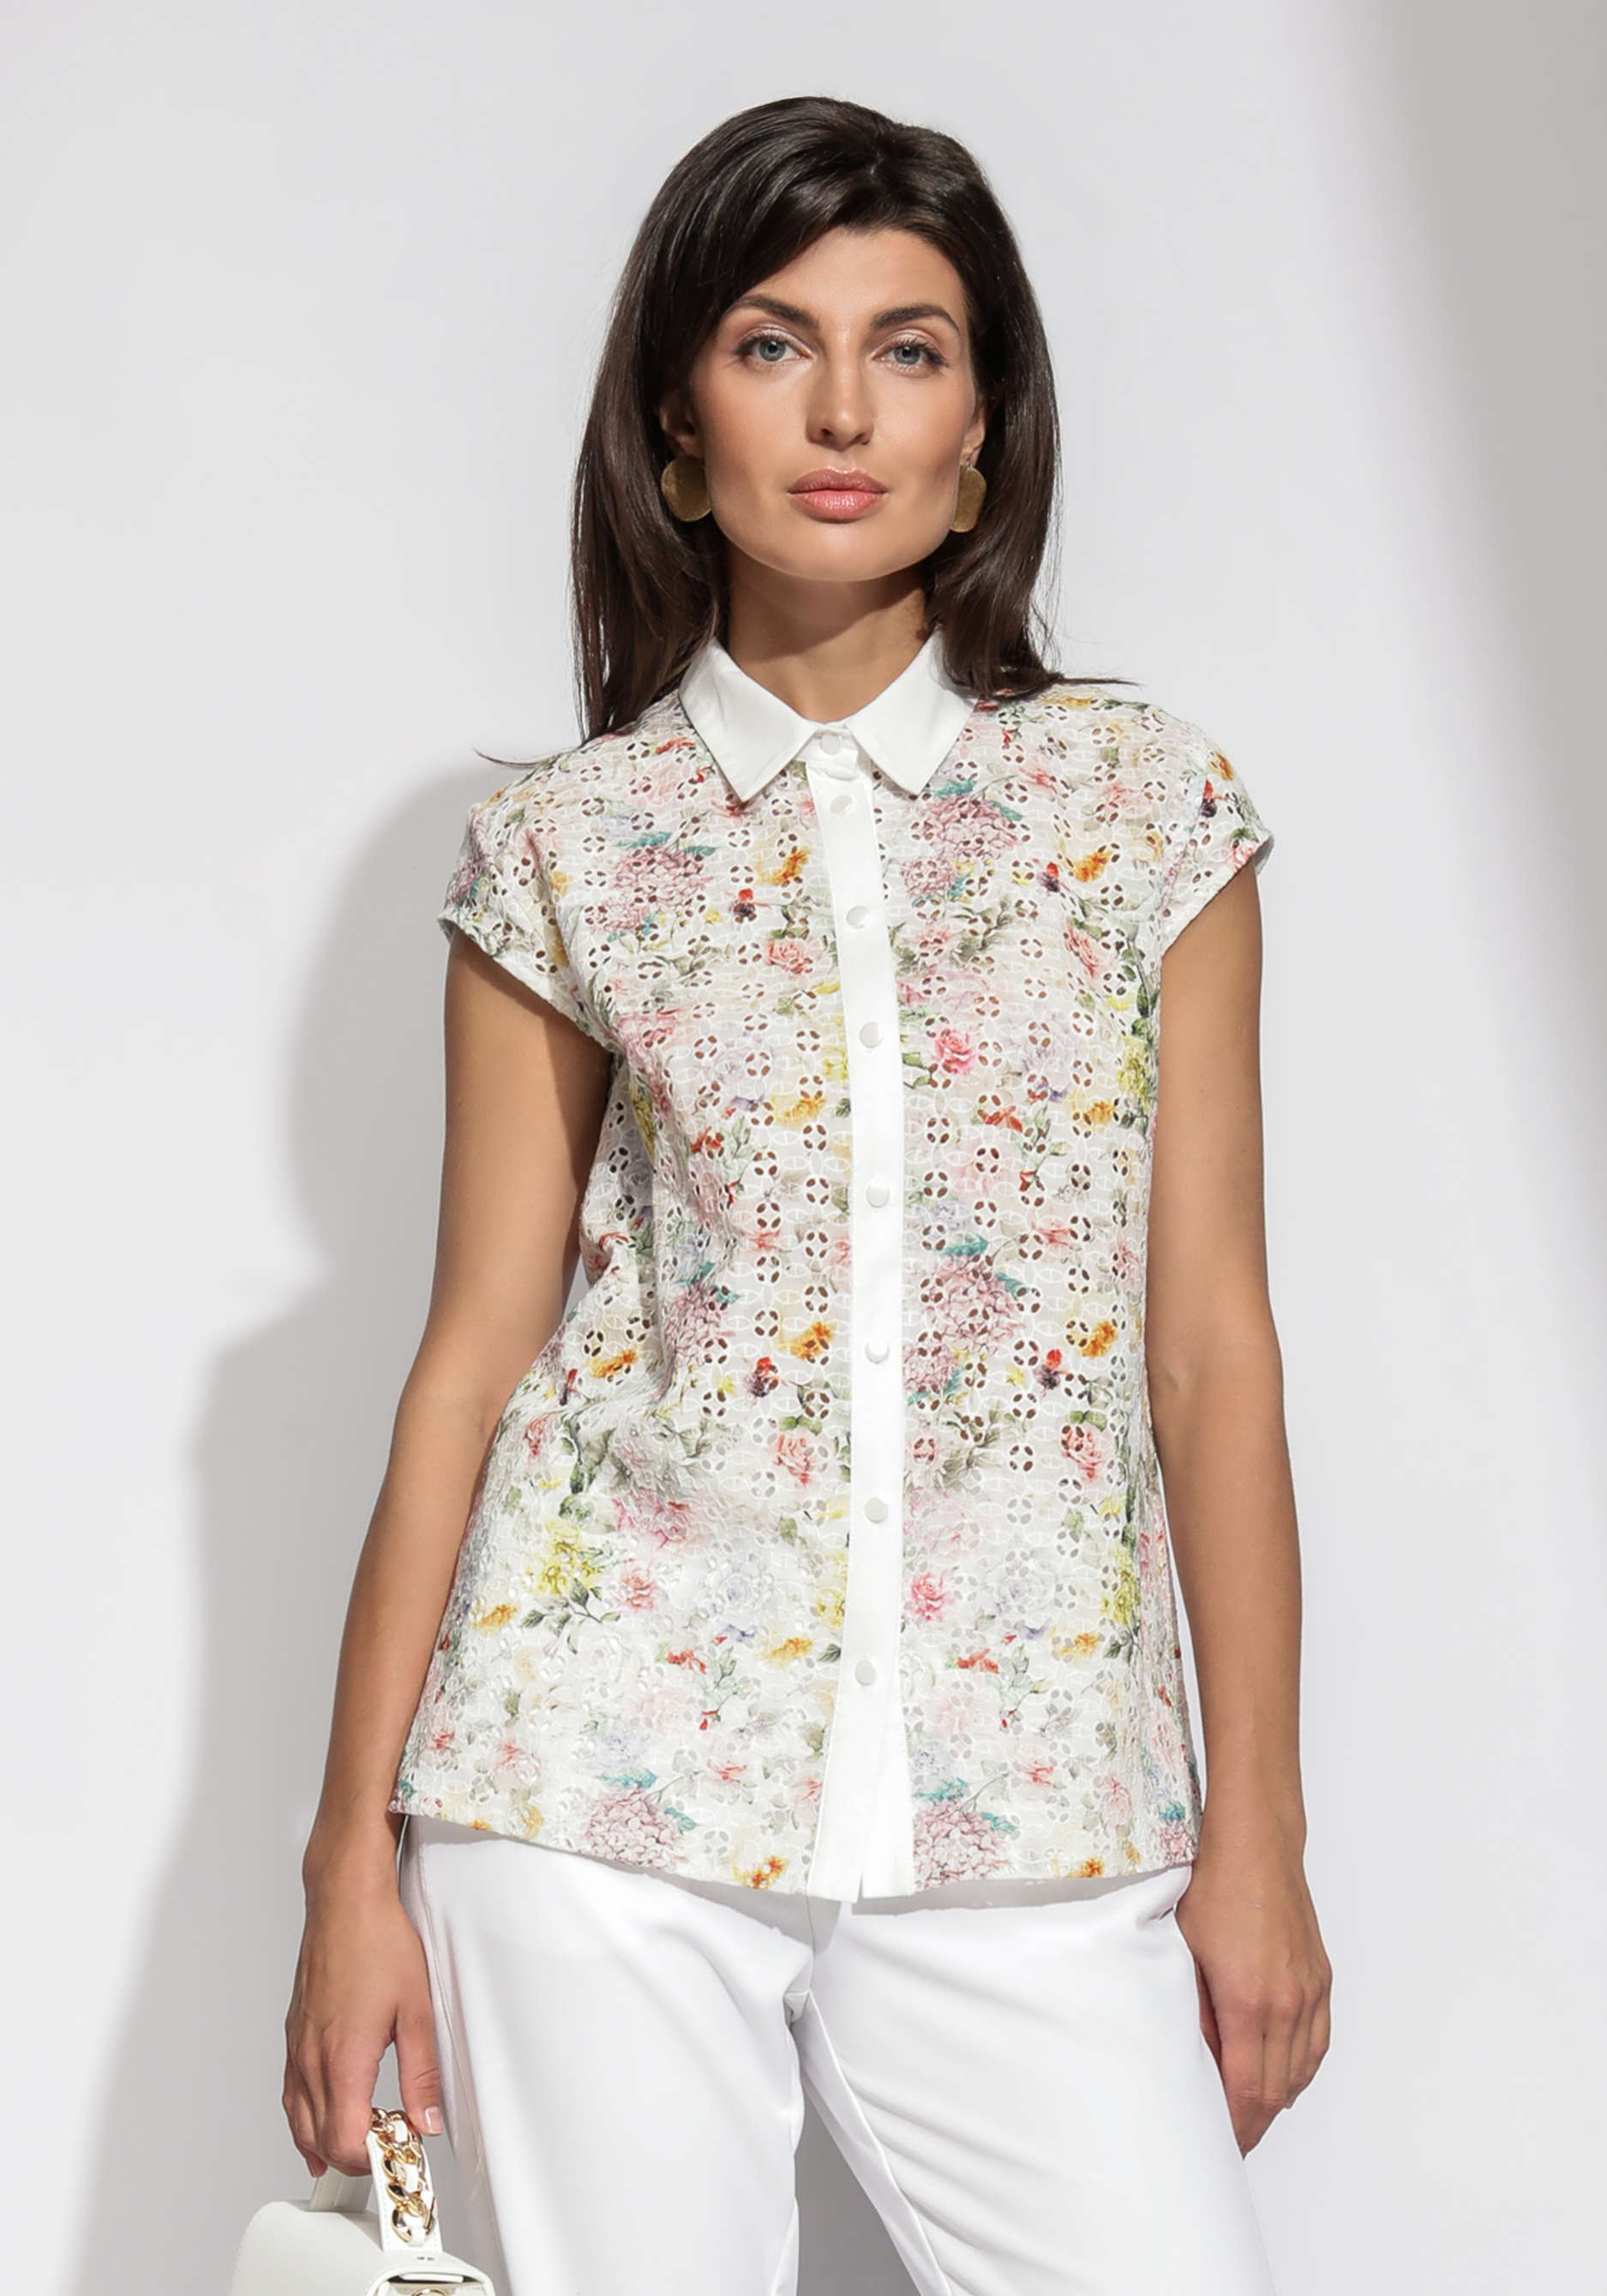 Блузка из шитья с цветочным принтом блузка из шитья с цветочным принтом